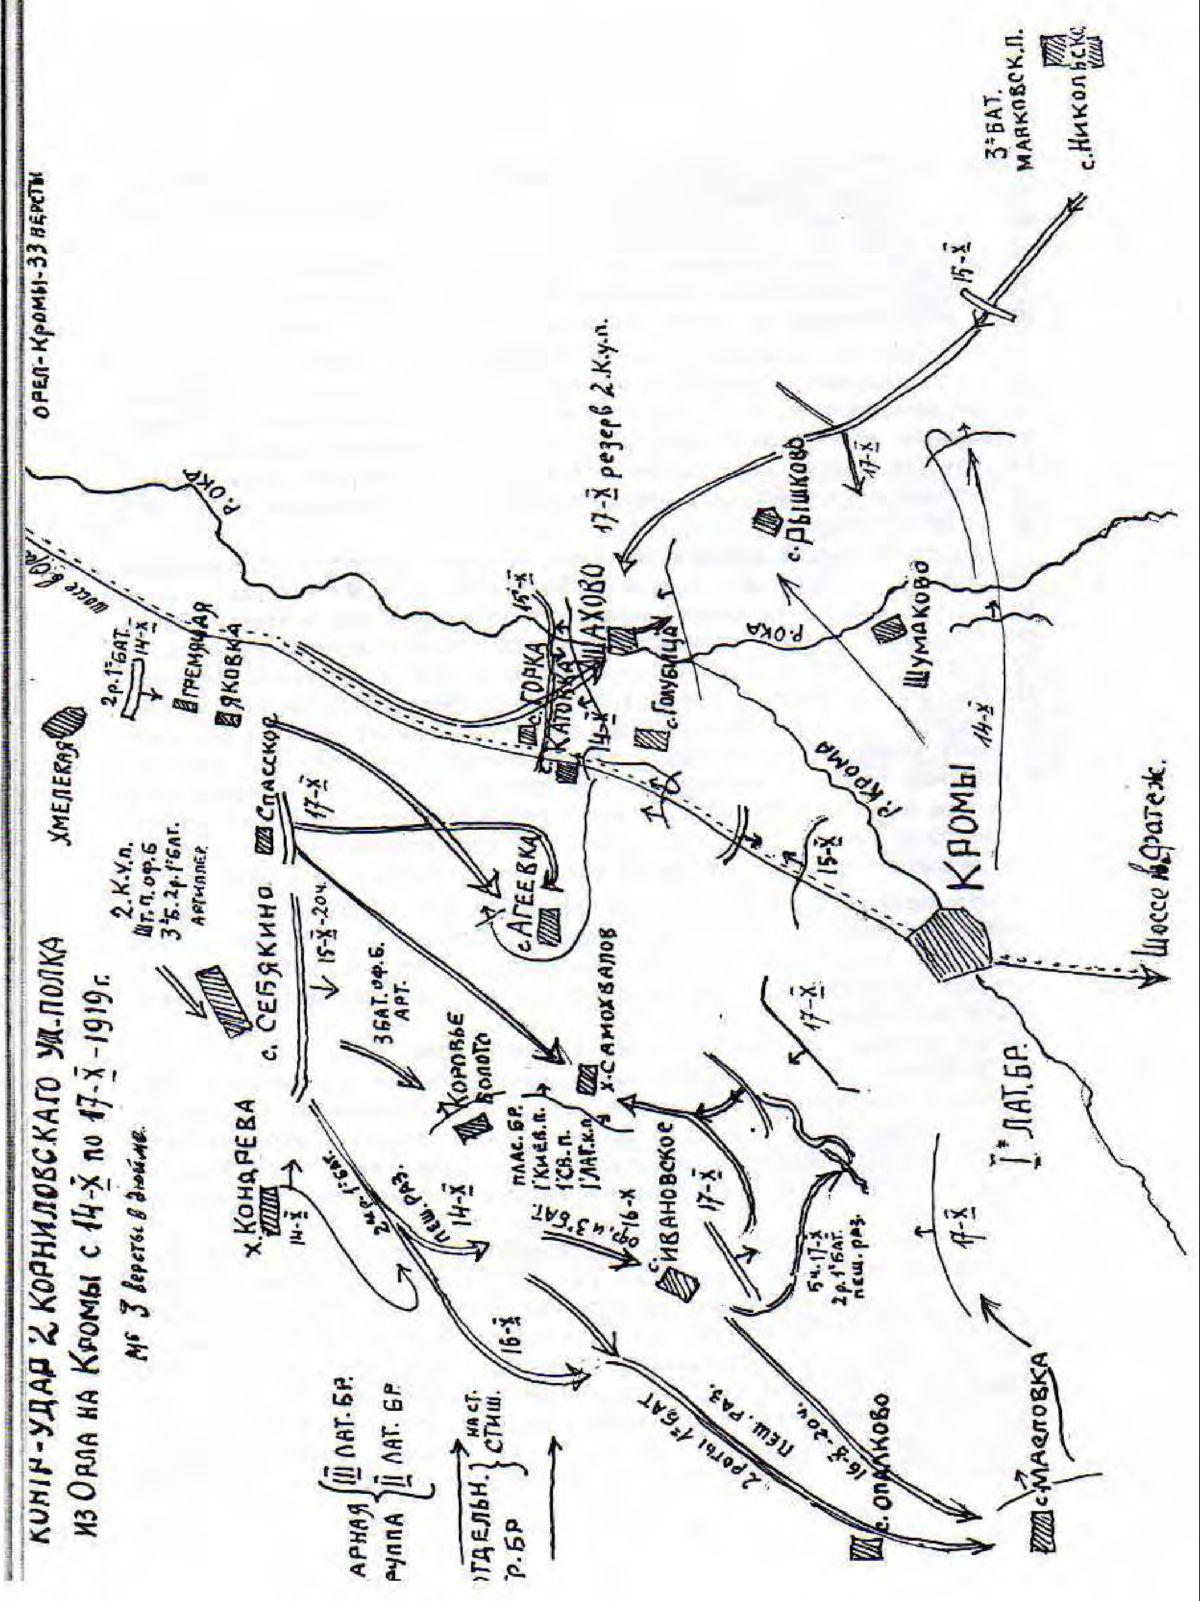 Контр-удар 2-го Корниловского уд. полка из Орла на Кромы с 14.10. по 17.10 1919 г.